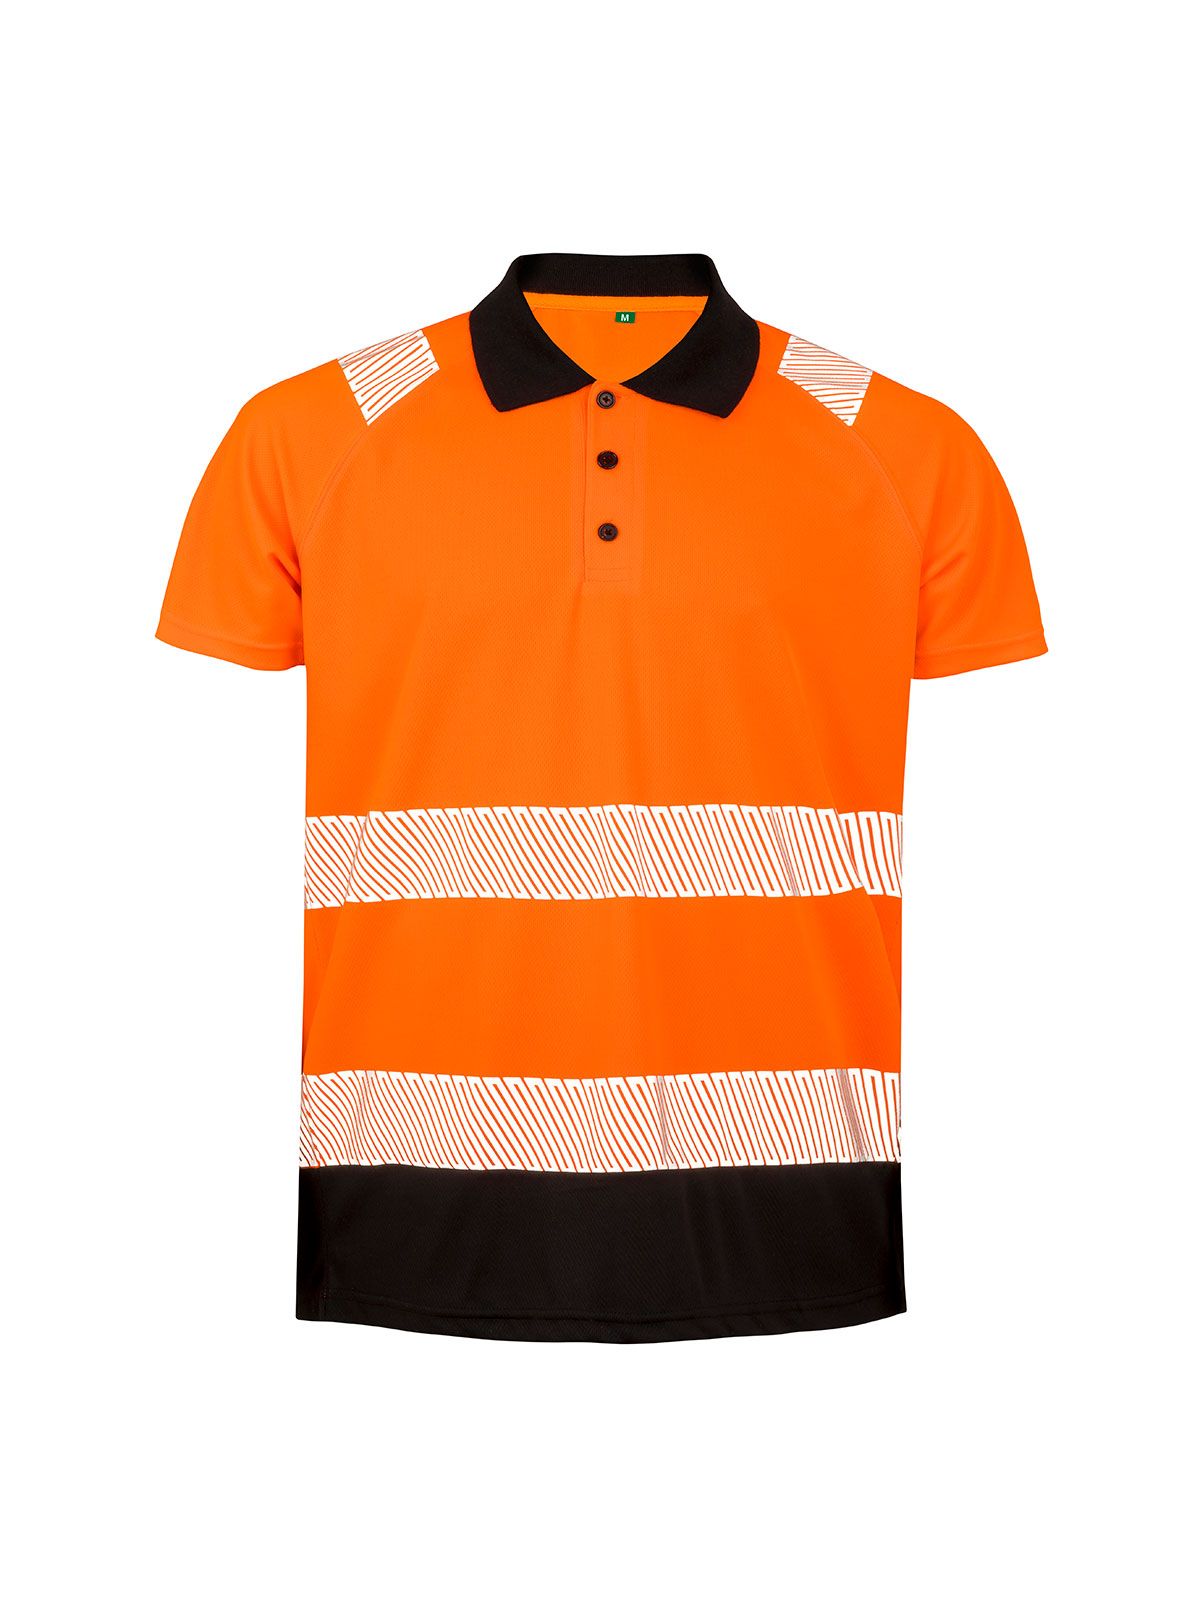 recycled-safety-polo-shirt-orange-black.webp